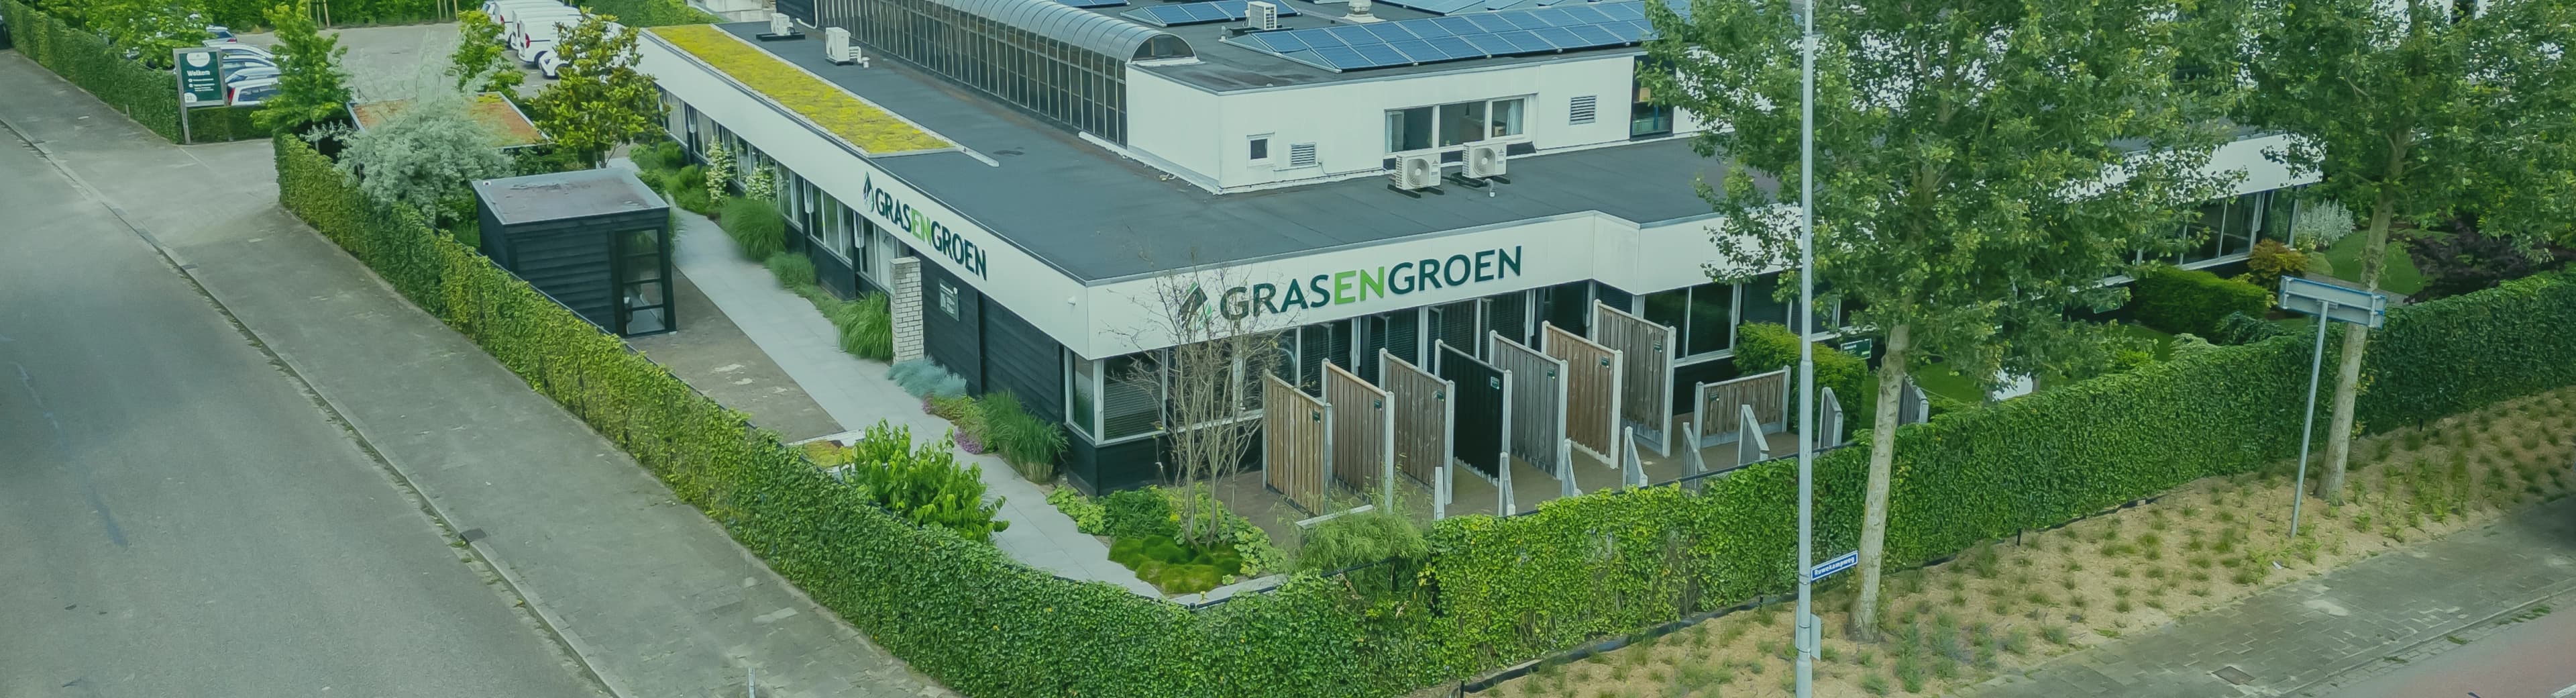 Werkenbijgrasengroenhome • Gras en Groen website